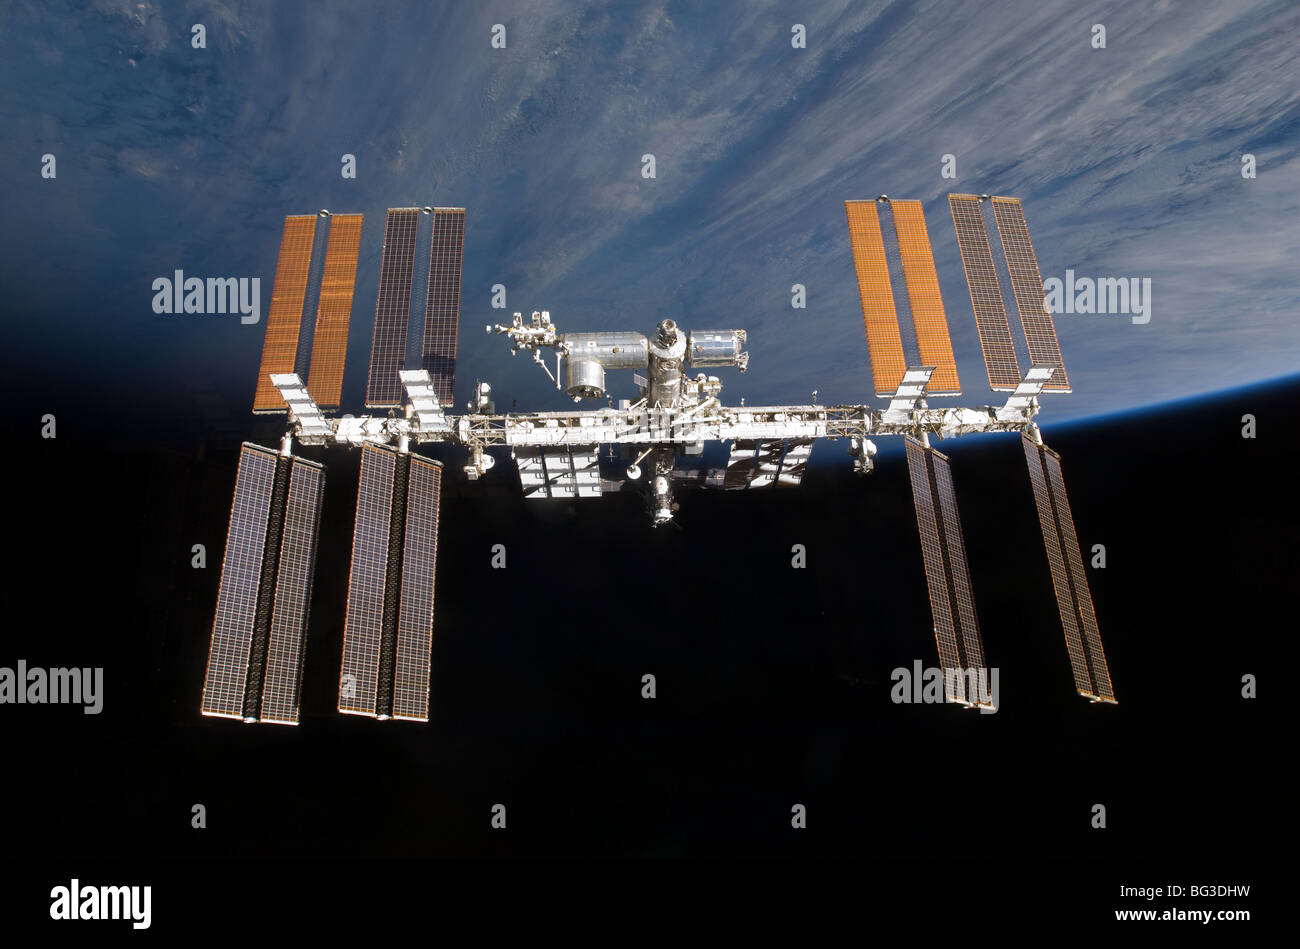 La NASA immagine della Stazione Spaziale Internazionale Foto Stock